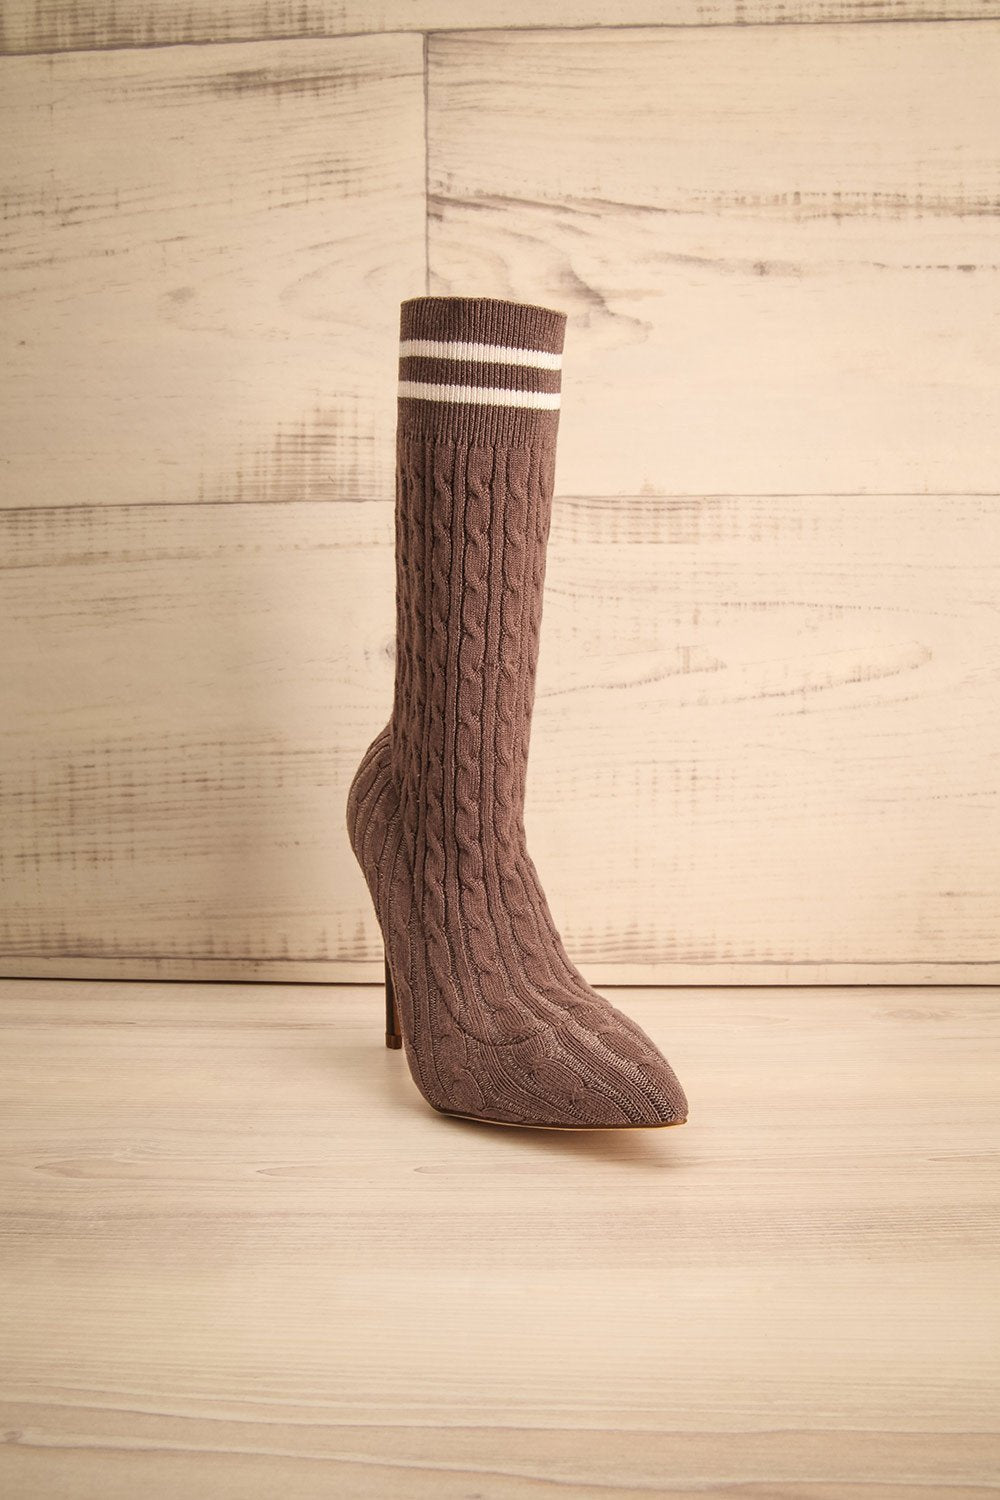 Hovborg Brown Knitted Socks Pumps | La Petite Garçonne Chpt. 2